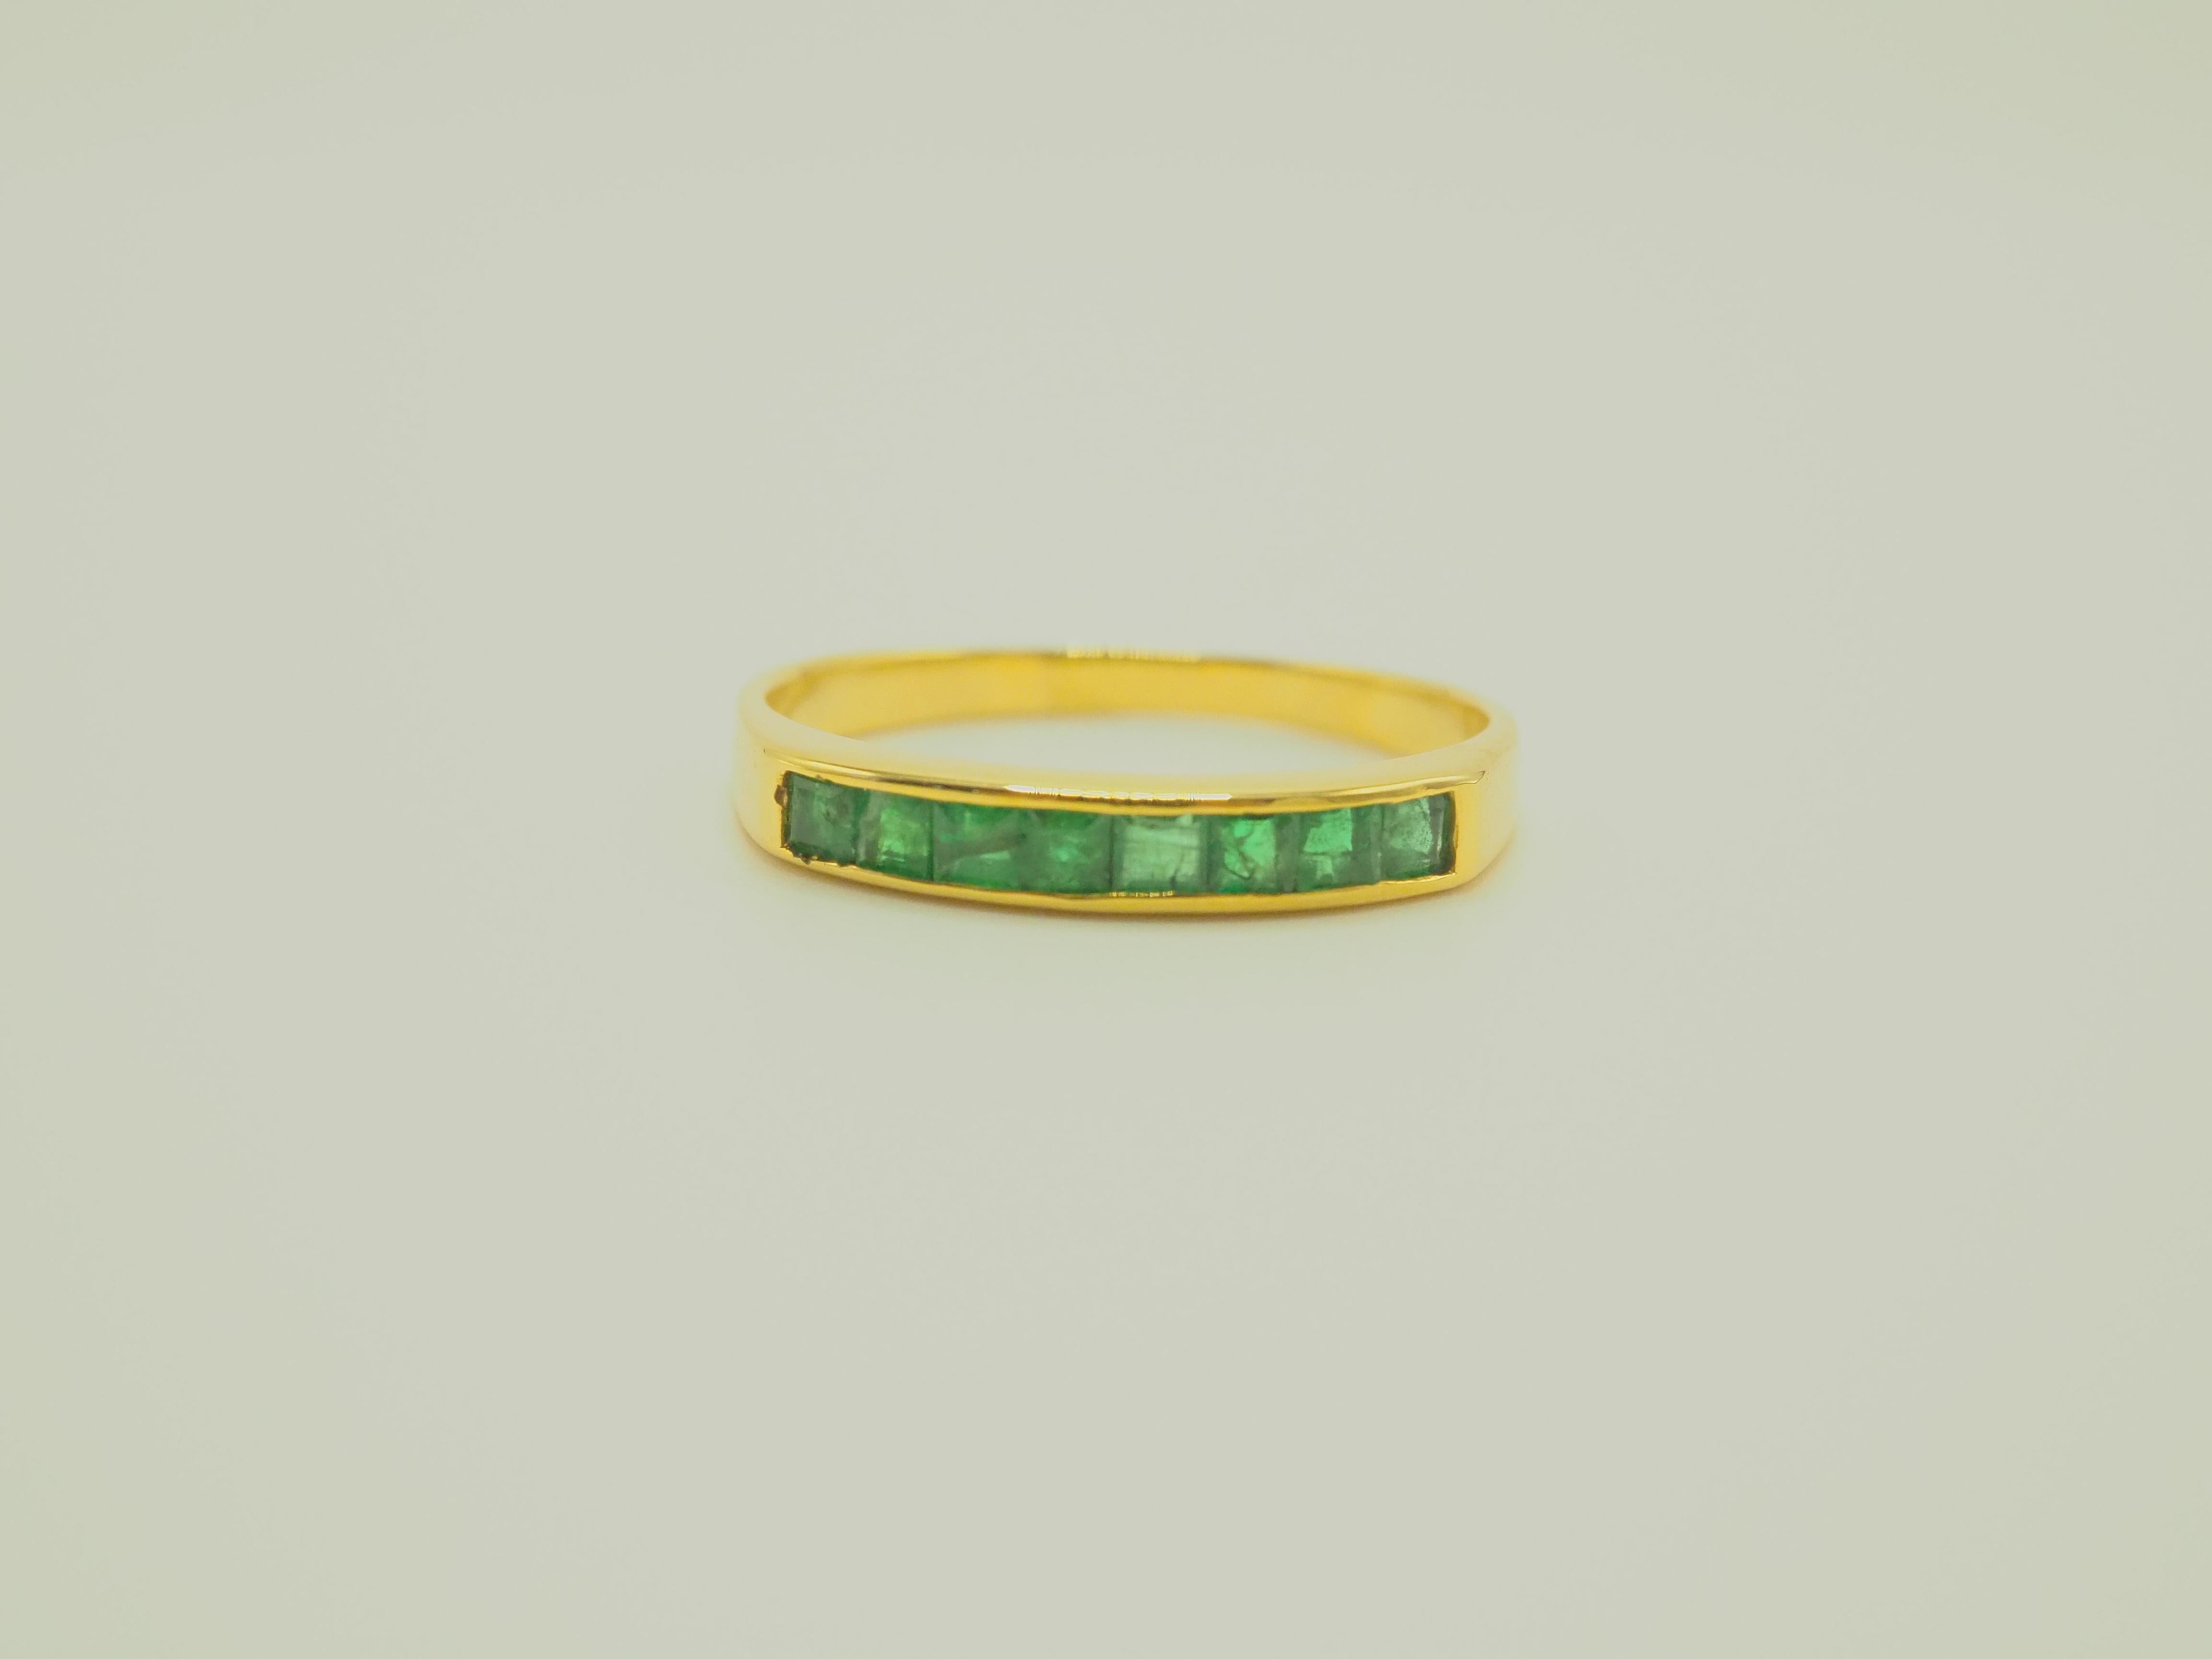 Ein wunderschöner Luxusring im Neo-Vintage-Stil, der für alle Geschlechter geeignet ist. Dieser Ring hat 8 schöne hoch gesättigte grüne Farbe Smaragde und sind schön in das Band kanalisiert. Der Ring ist aus massivem 14-karätigem Gelbgold gefertigt.